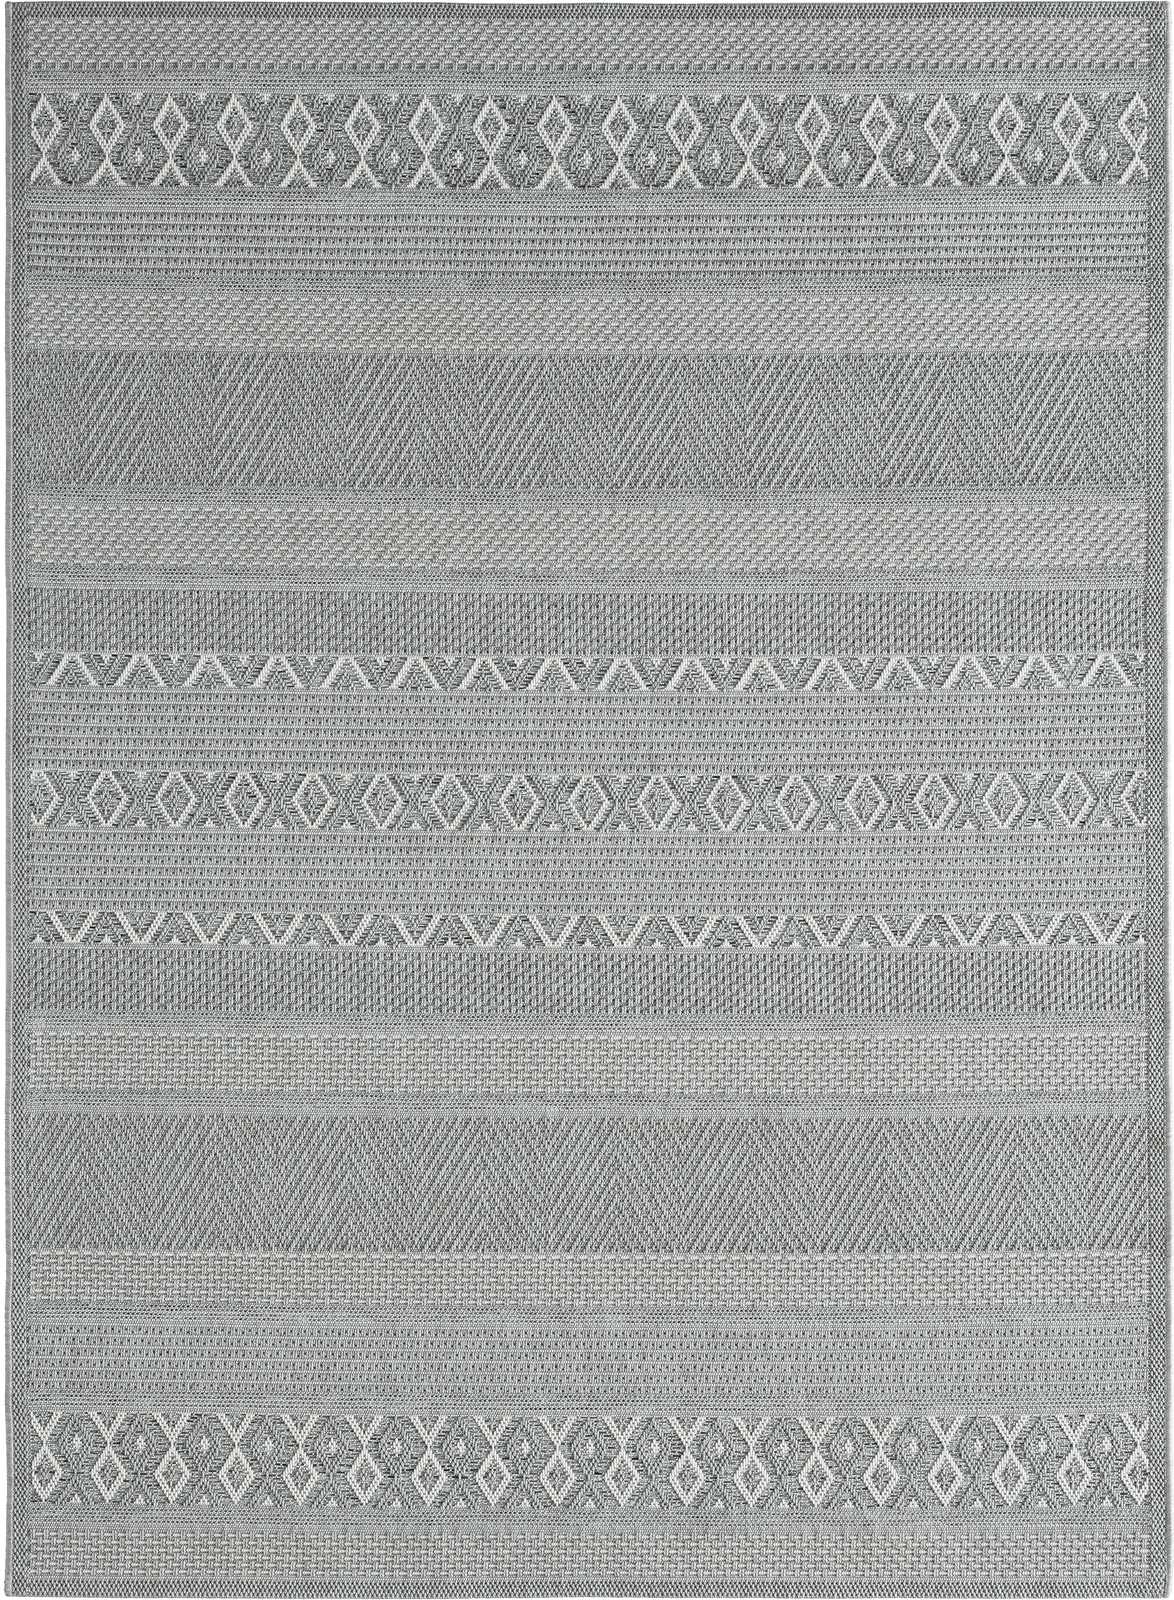             Buitenkleed met eenvoudig patroon in grijs - 220 x 160 cm
        